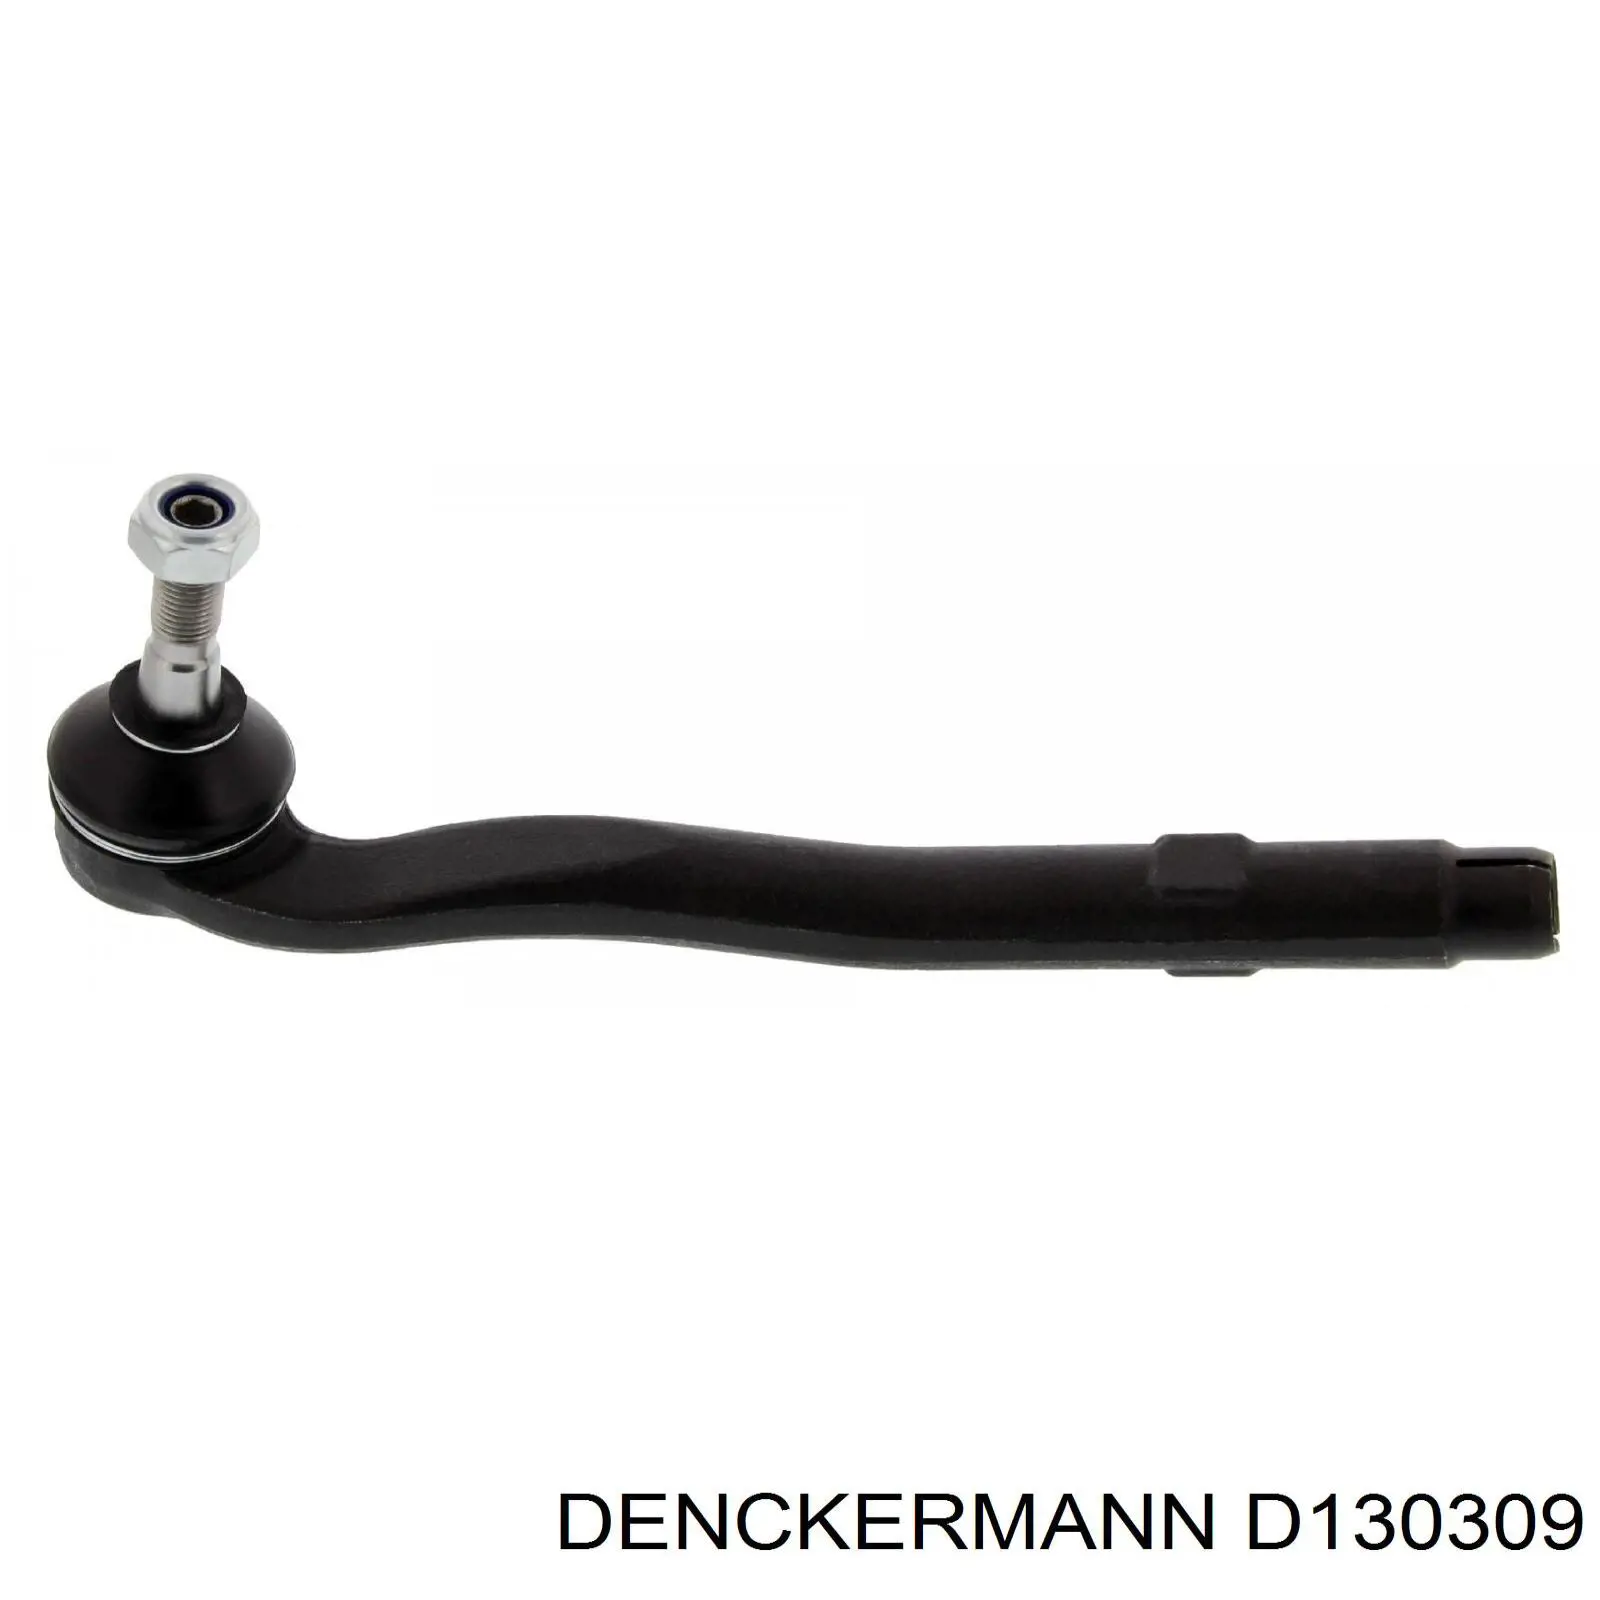 D130309 Denckermann rótula barra de acoplamiento exterior